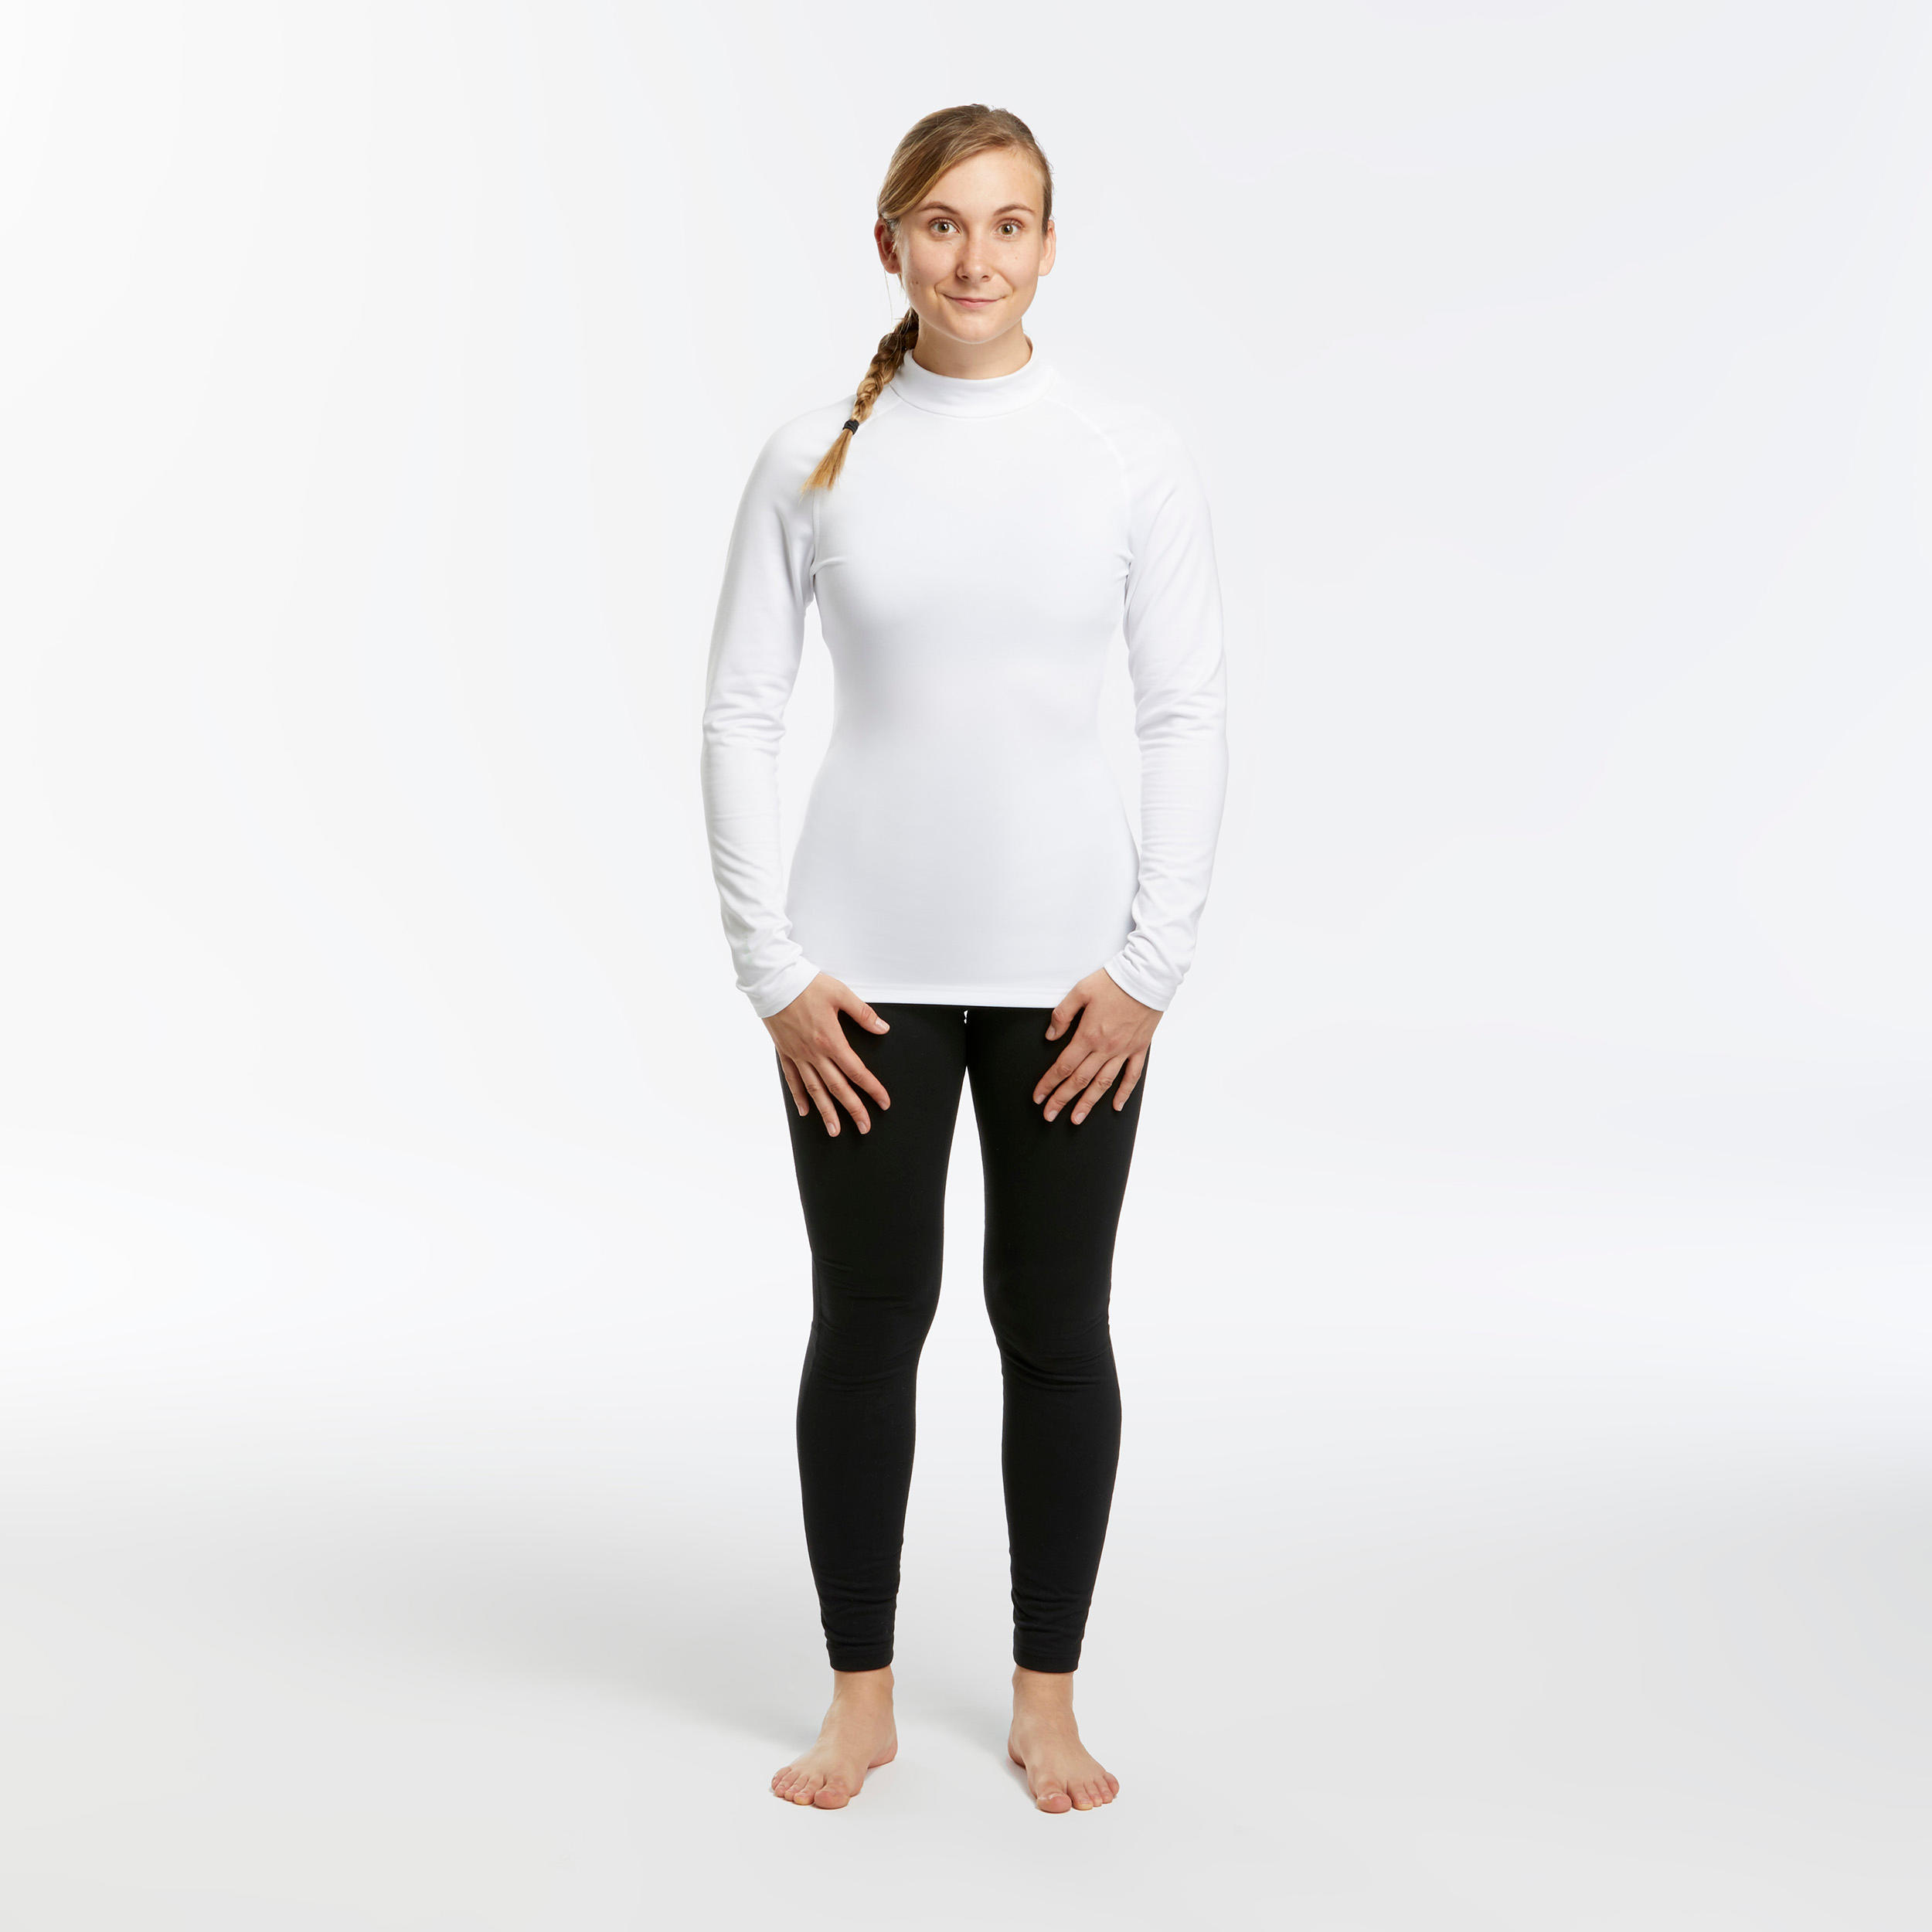 ZEALOTPOWER Women Thermal Underwear Set Sport Base Layers Winter